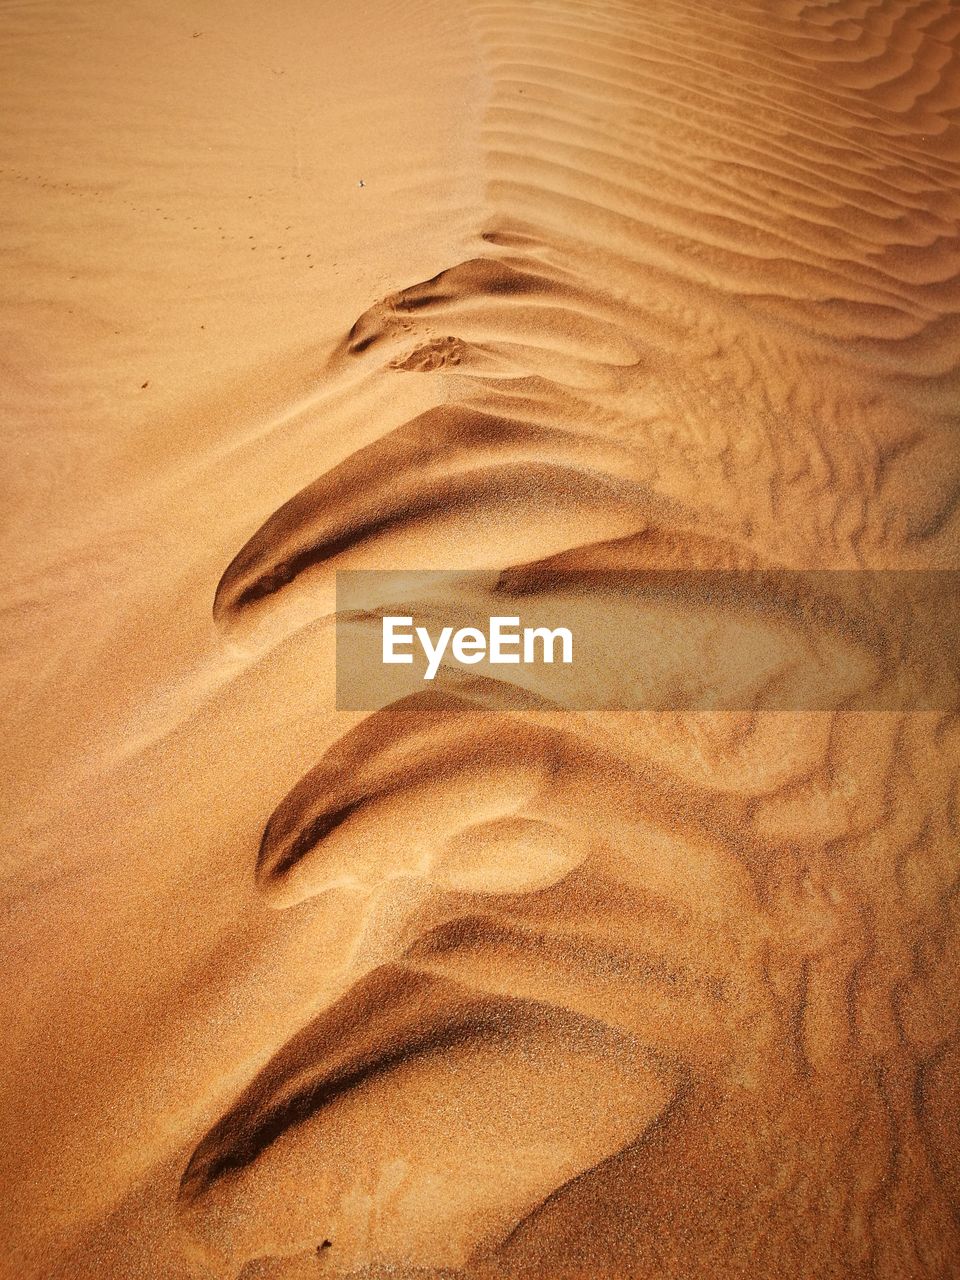 Full frame shot of sand dunes in desert